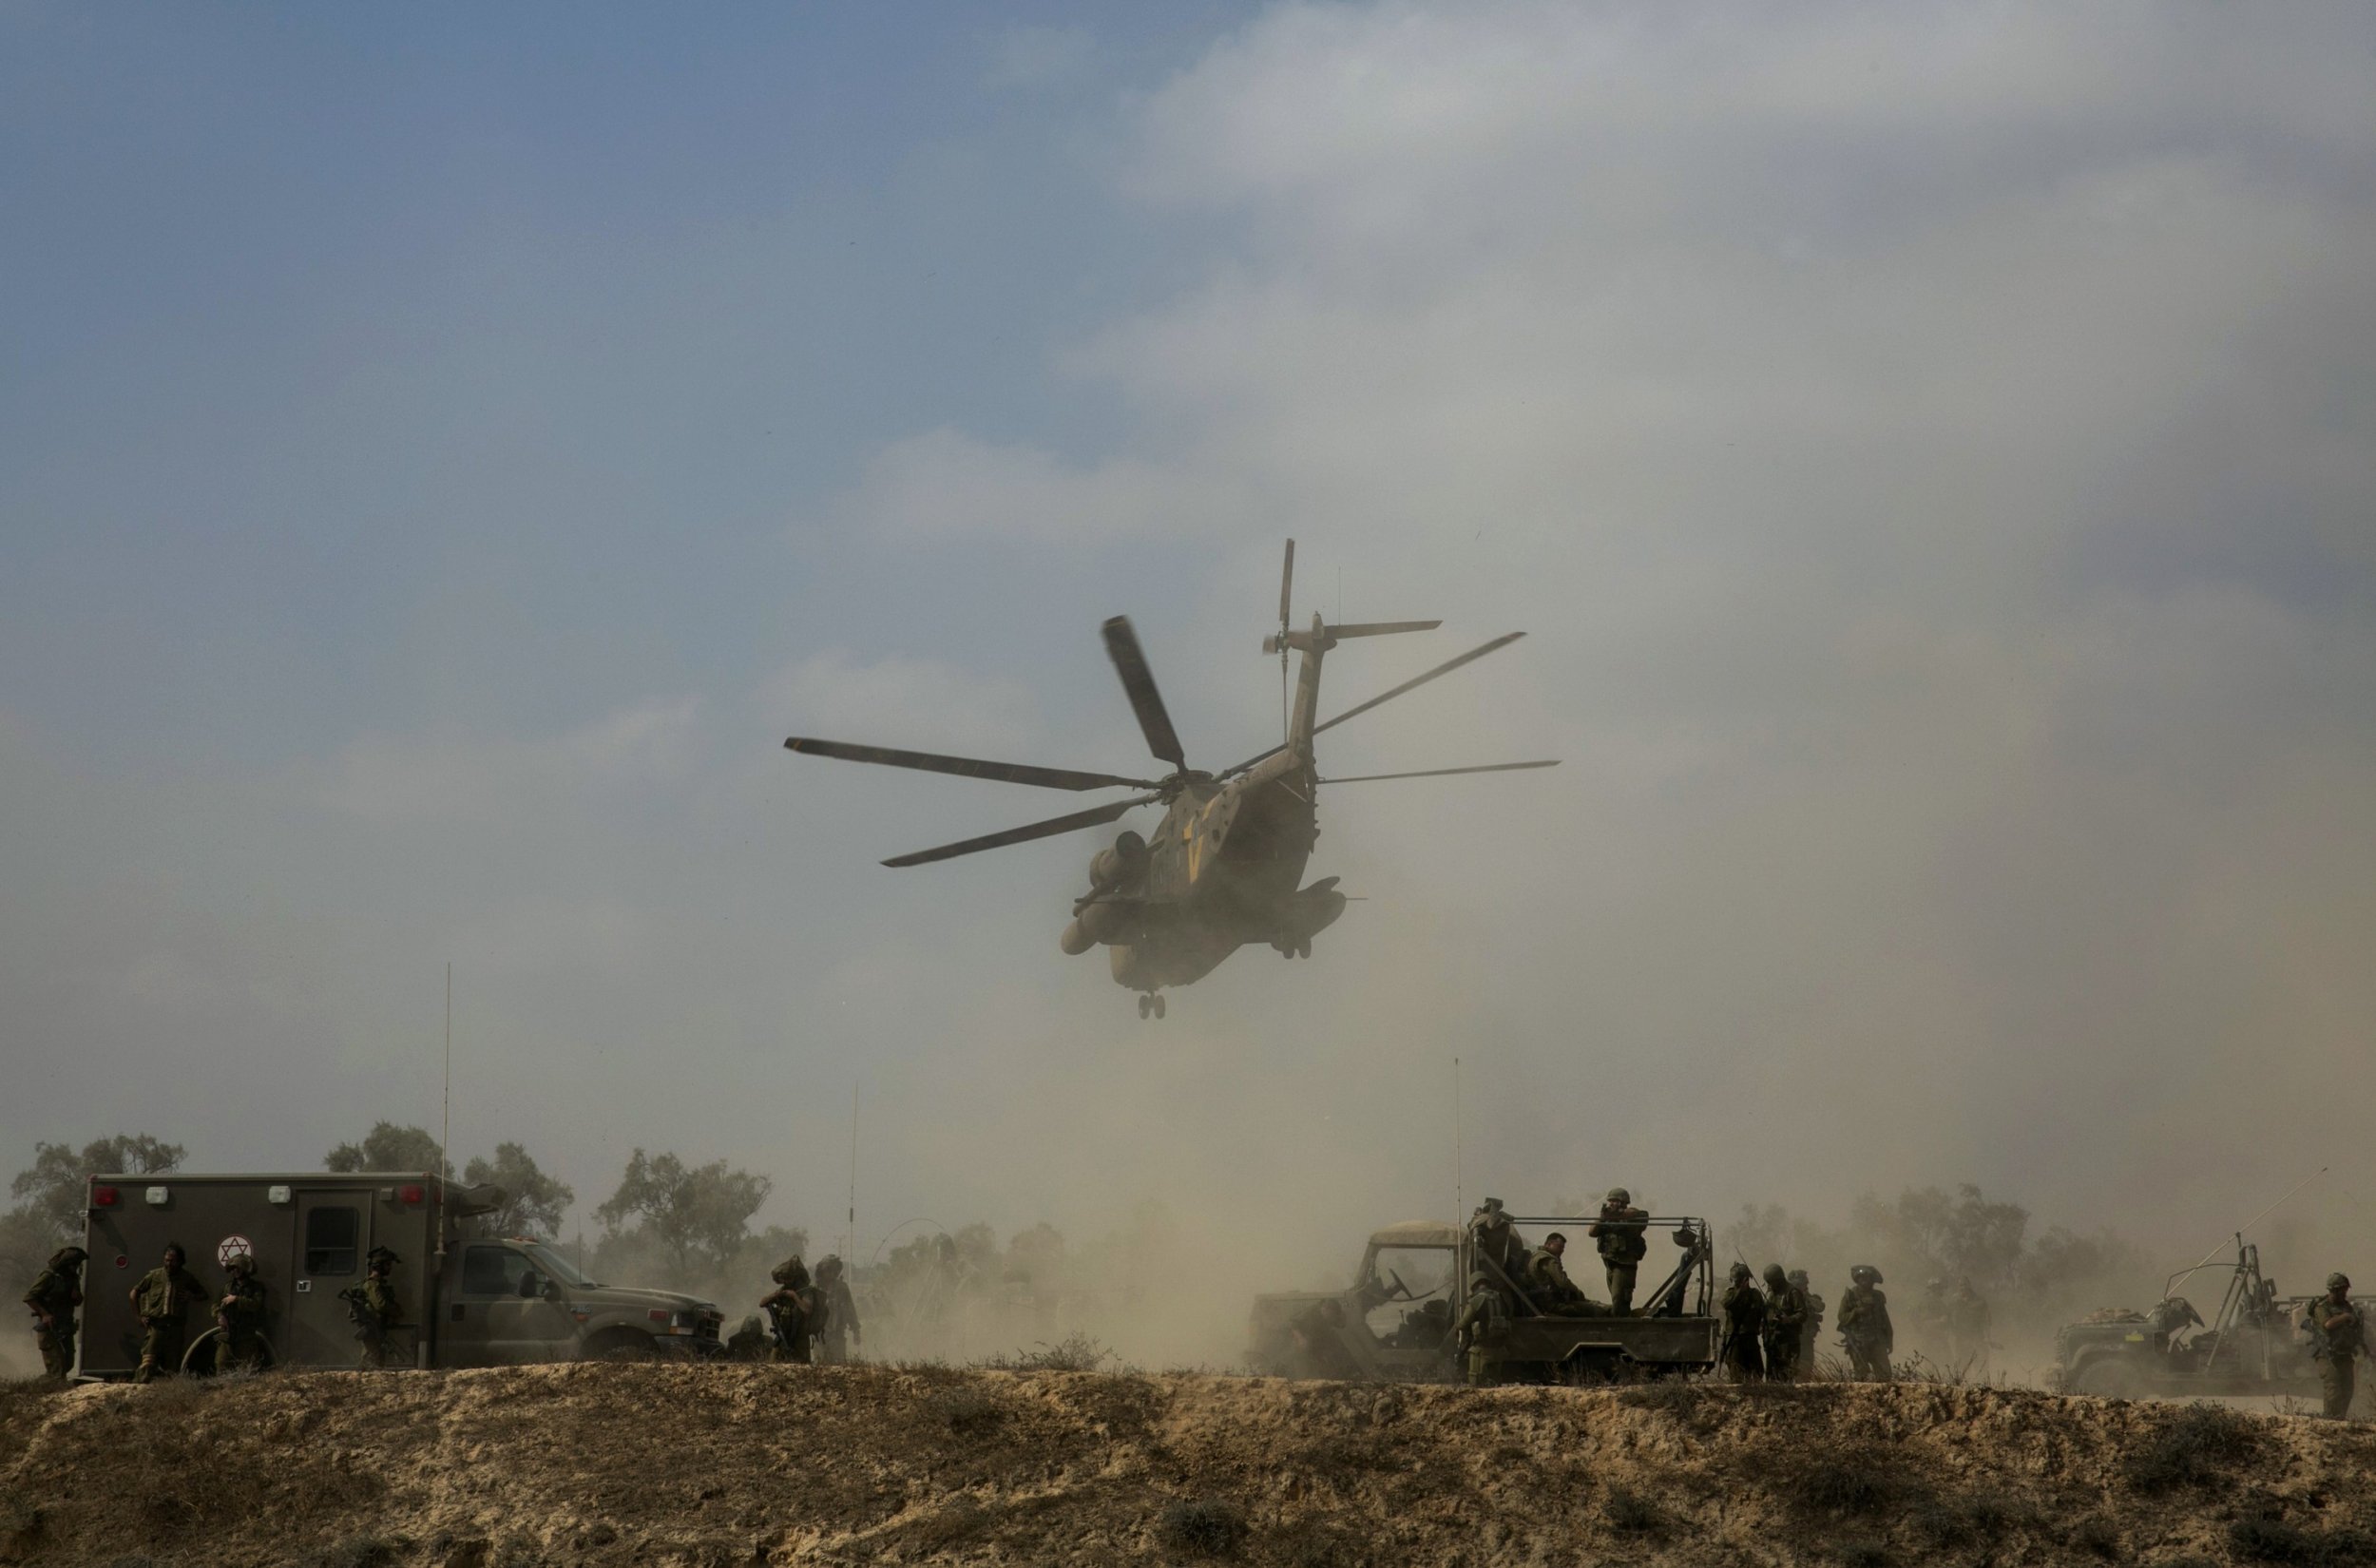 Israeli helicopter